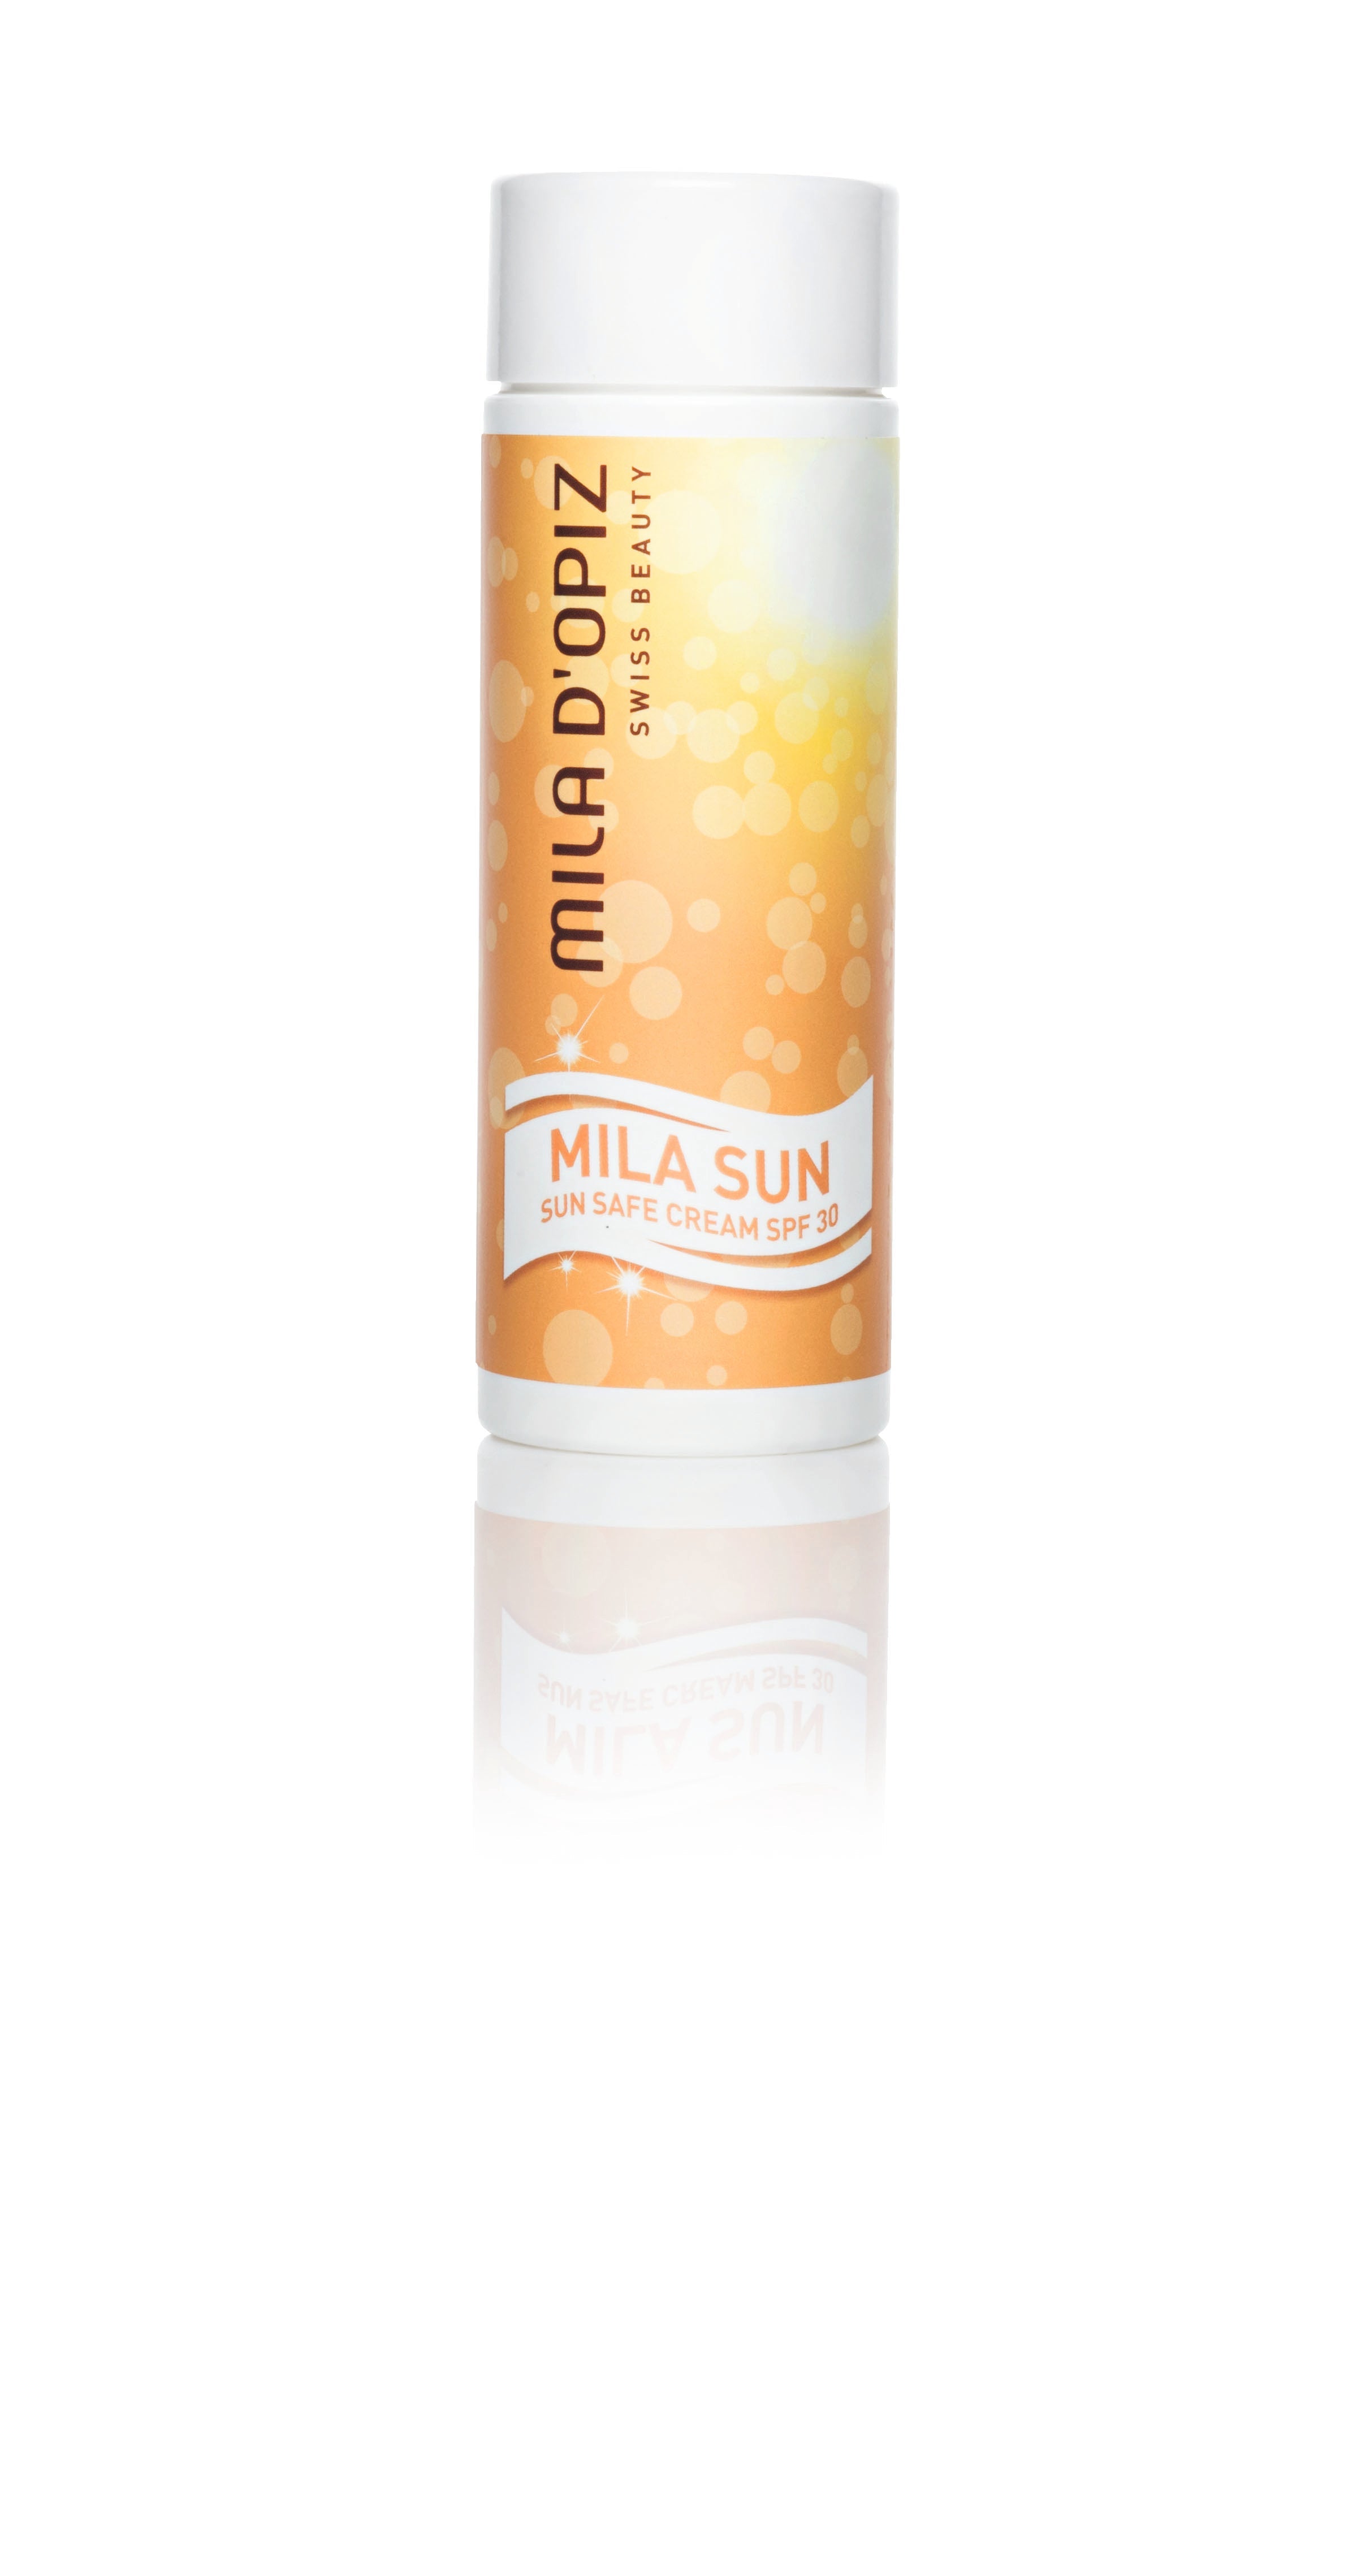 Mila Sun - Sun Safe Cream SPF 30 200ml